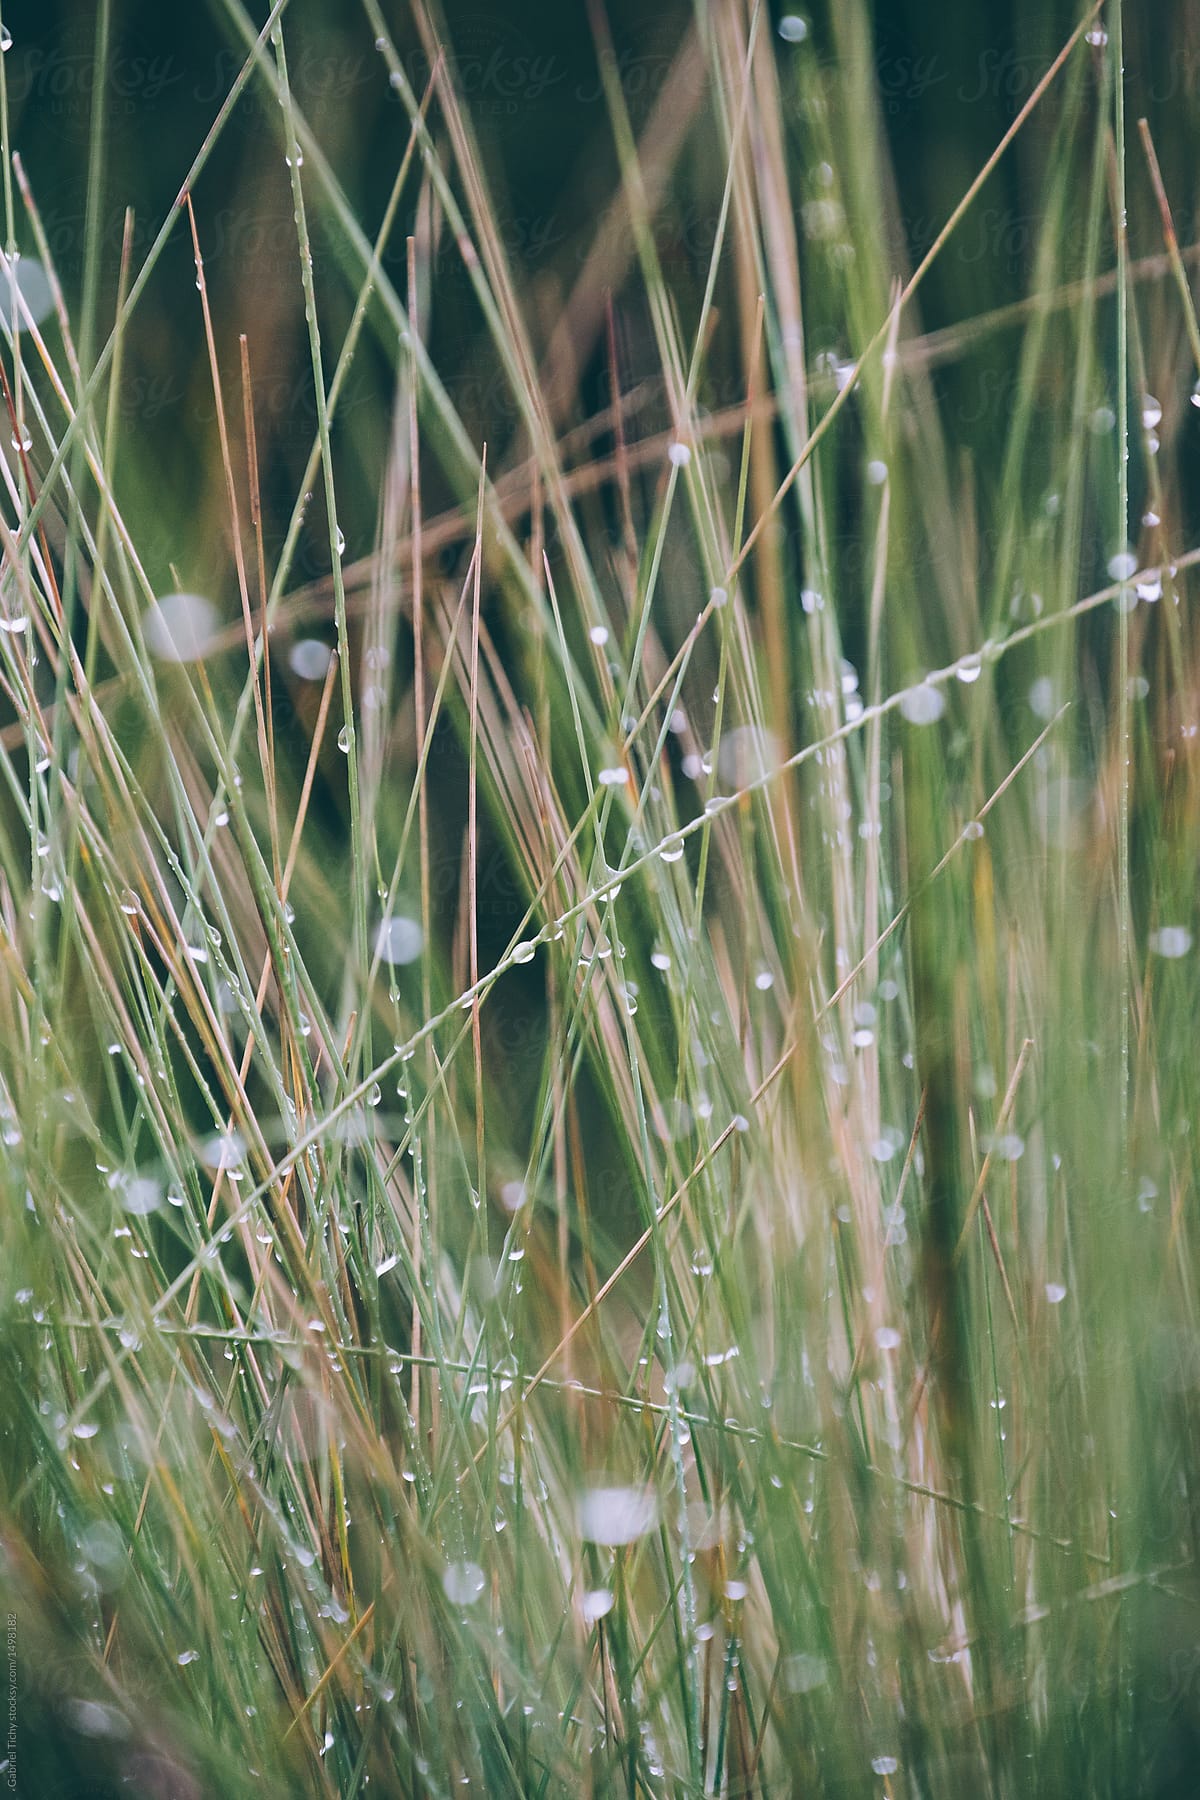 Detail of grass after rain